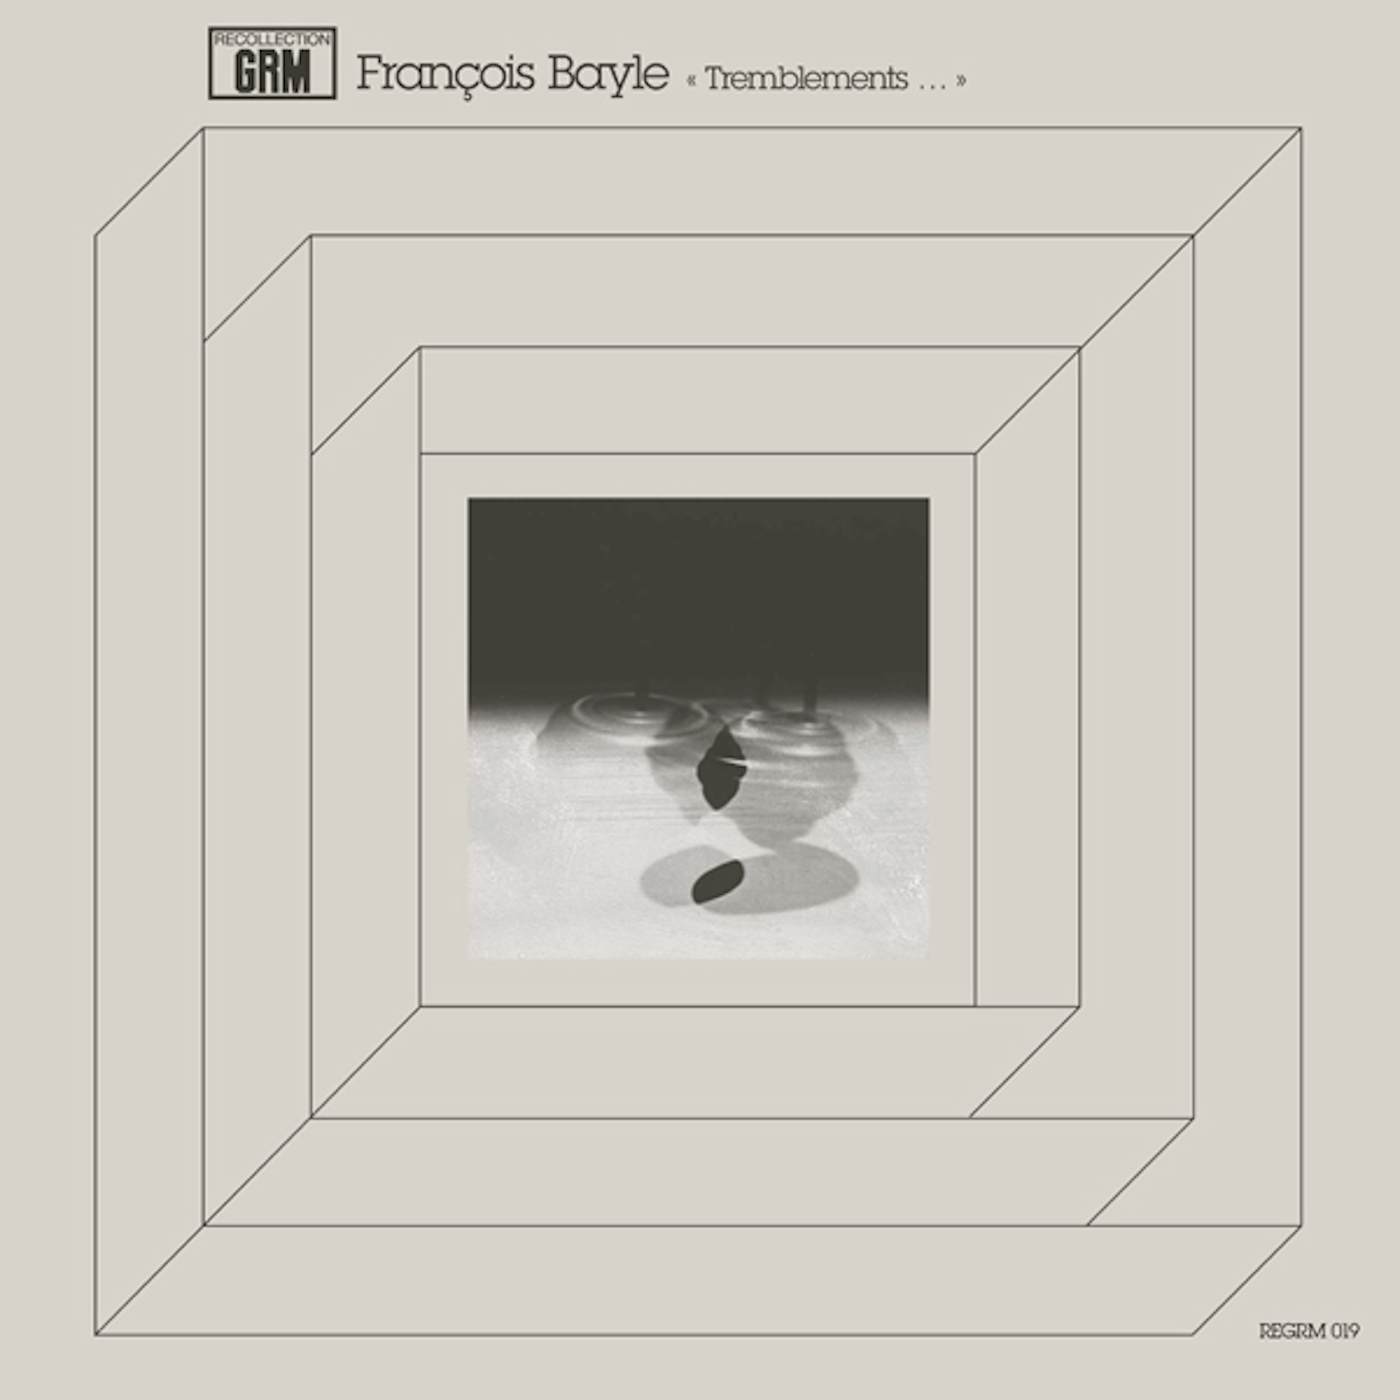 François Bayle TREMBLEMENTS... Vinyl Record